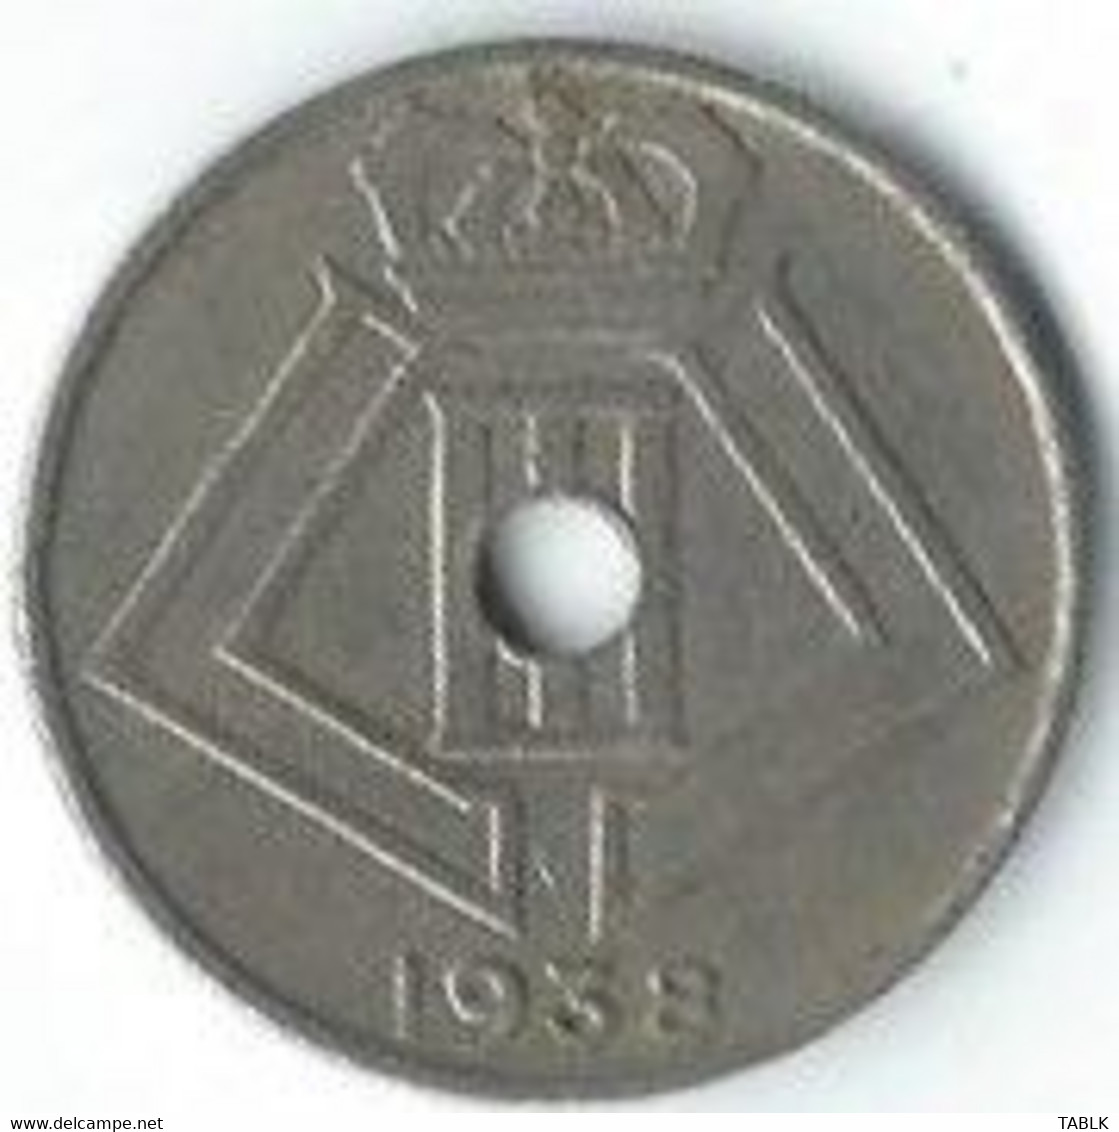 M975 - BELGIË - BELGIUM - 10 CENTIEM 1938 - 10 Centimos